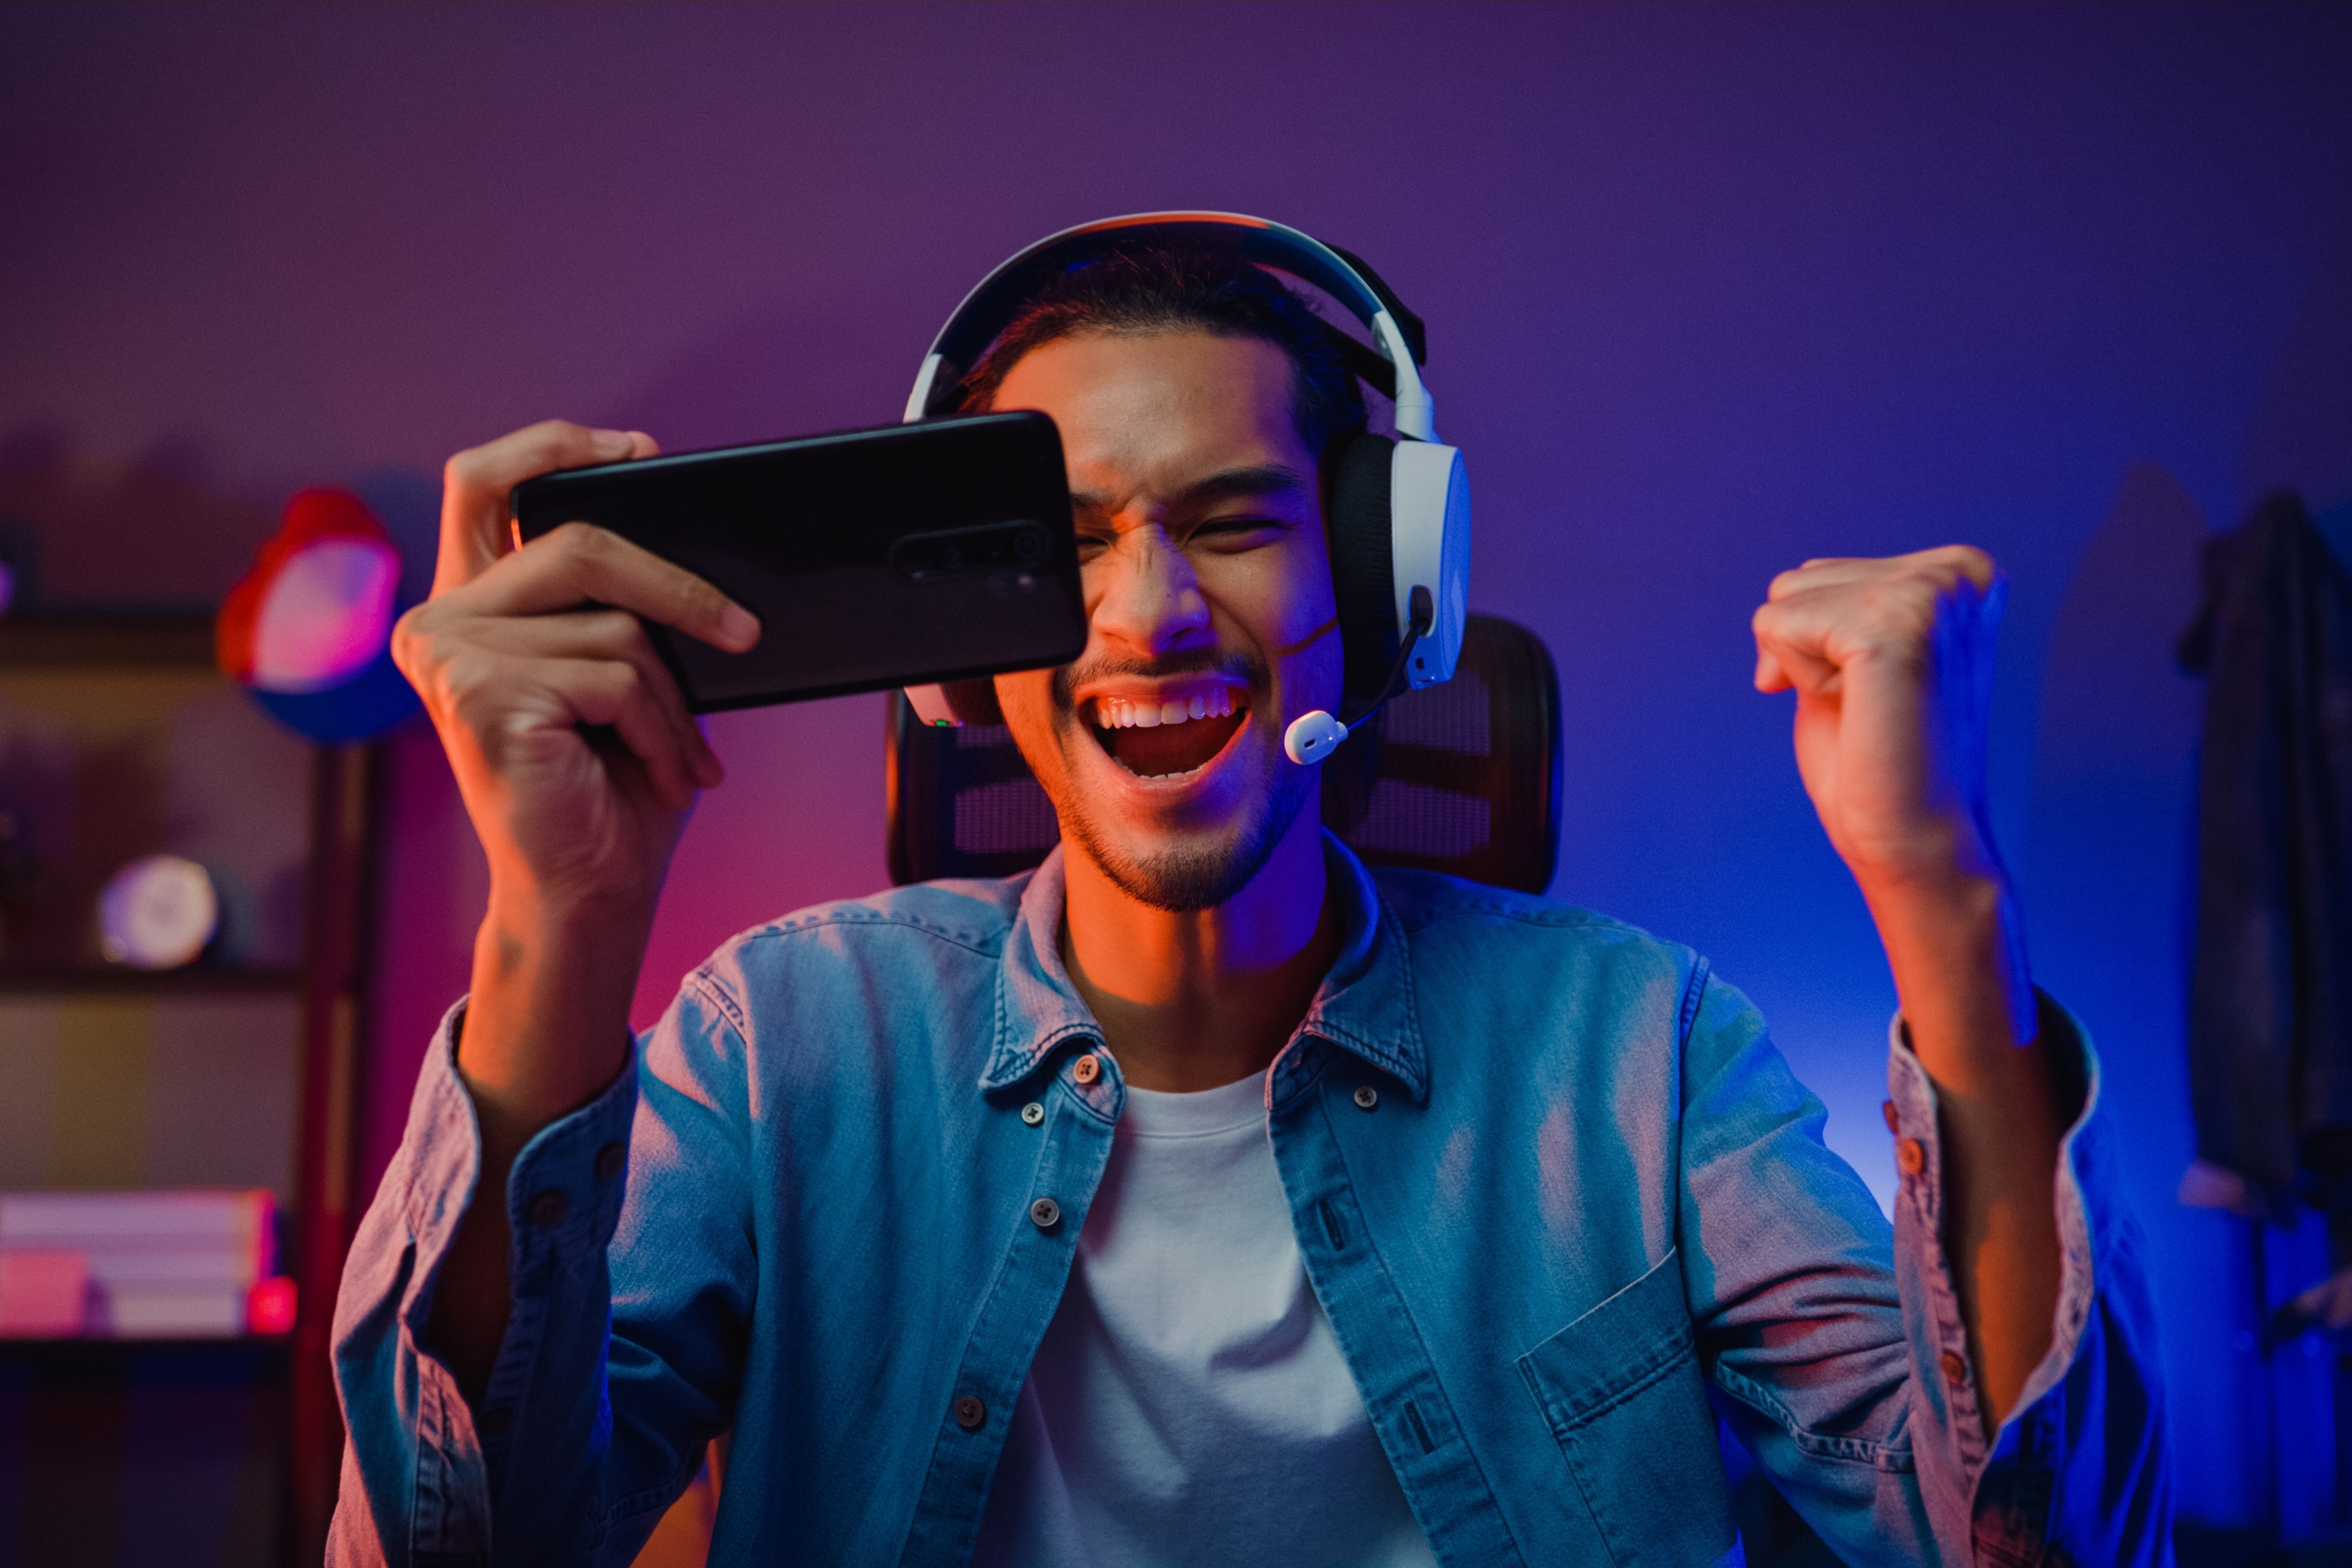 Homme en train de jouer à des jeux vidéos © Shutterstock